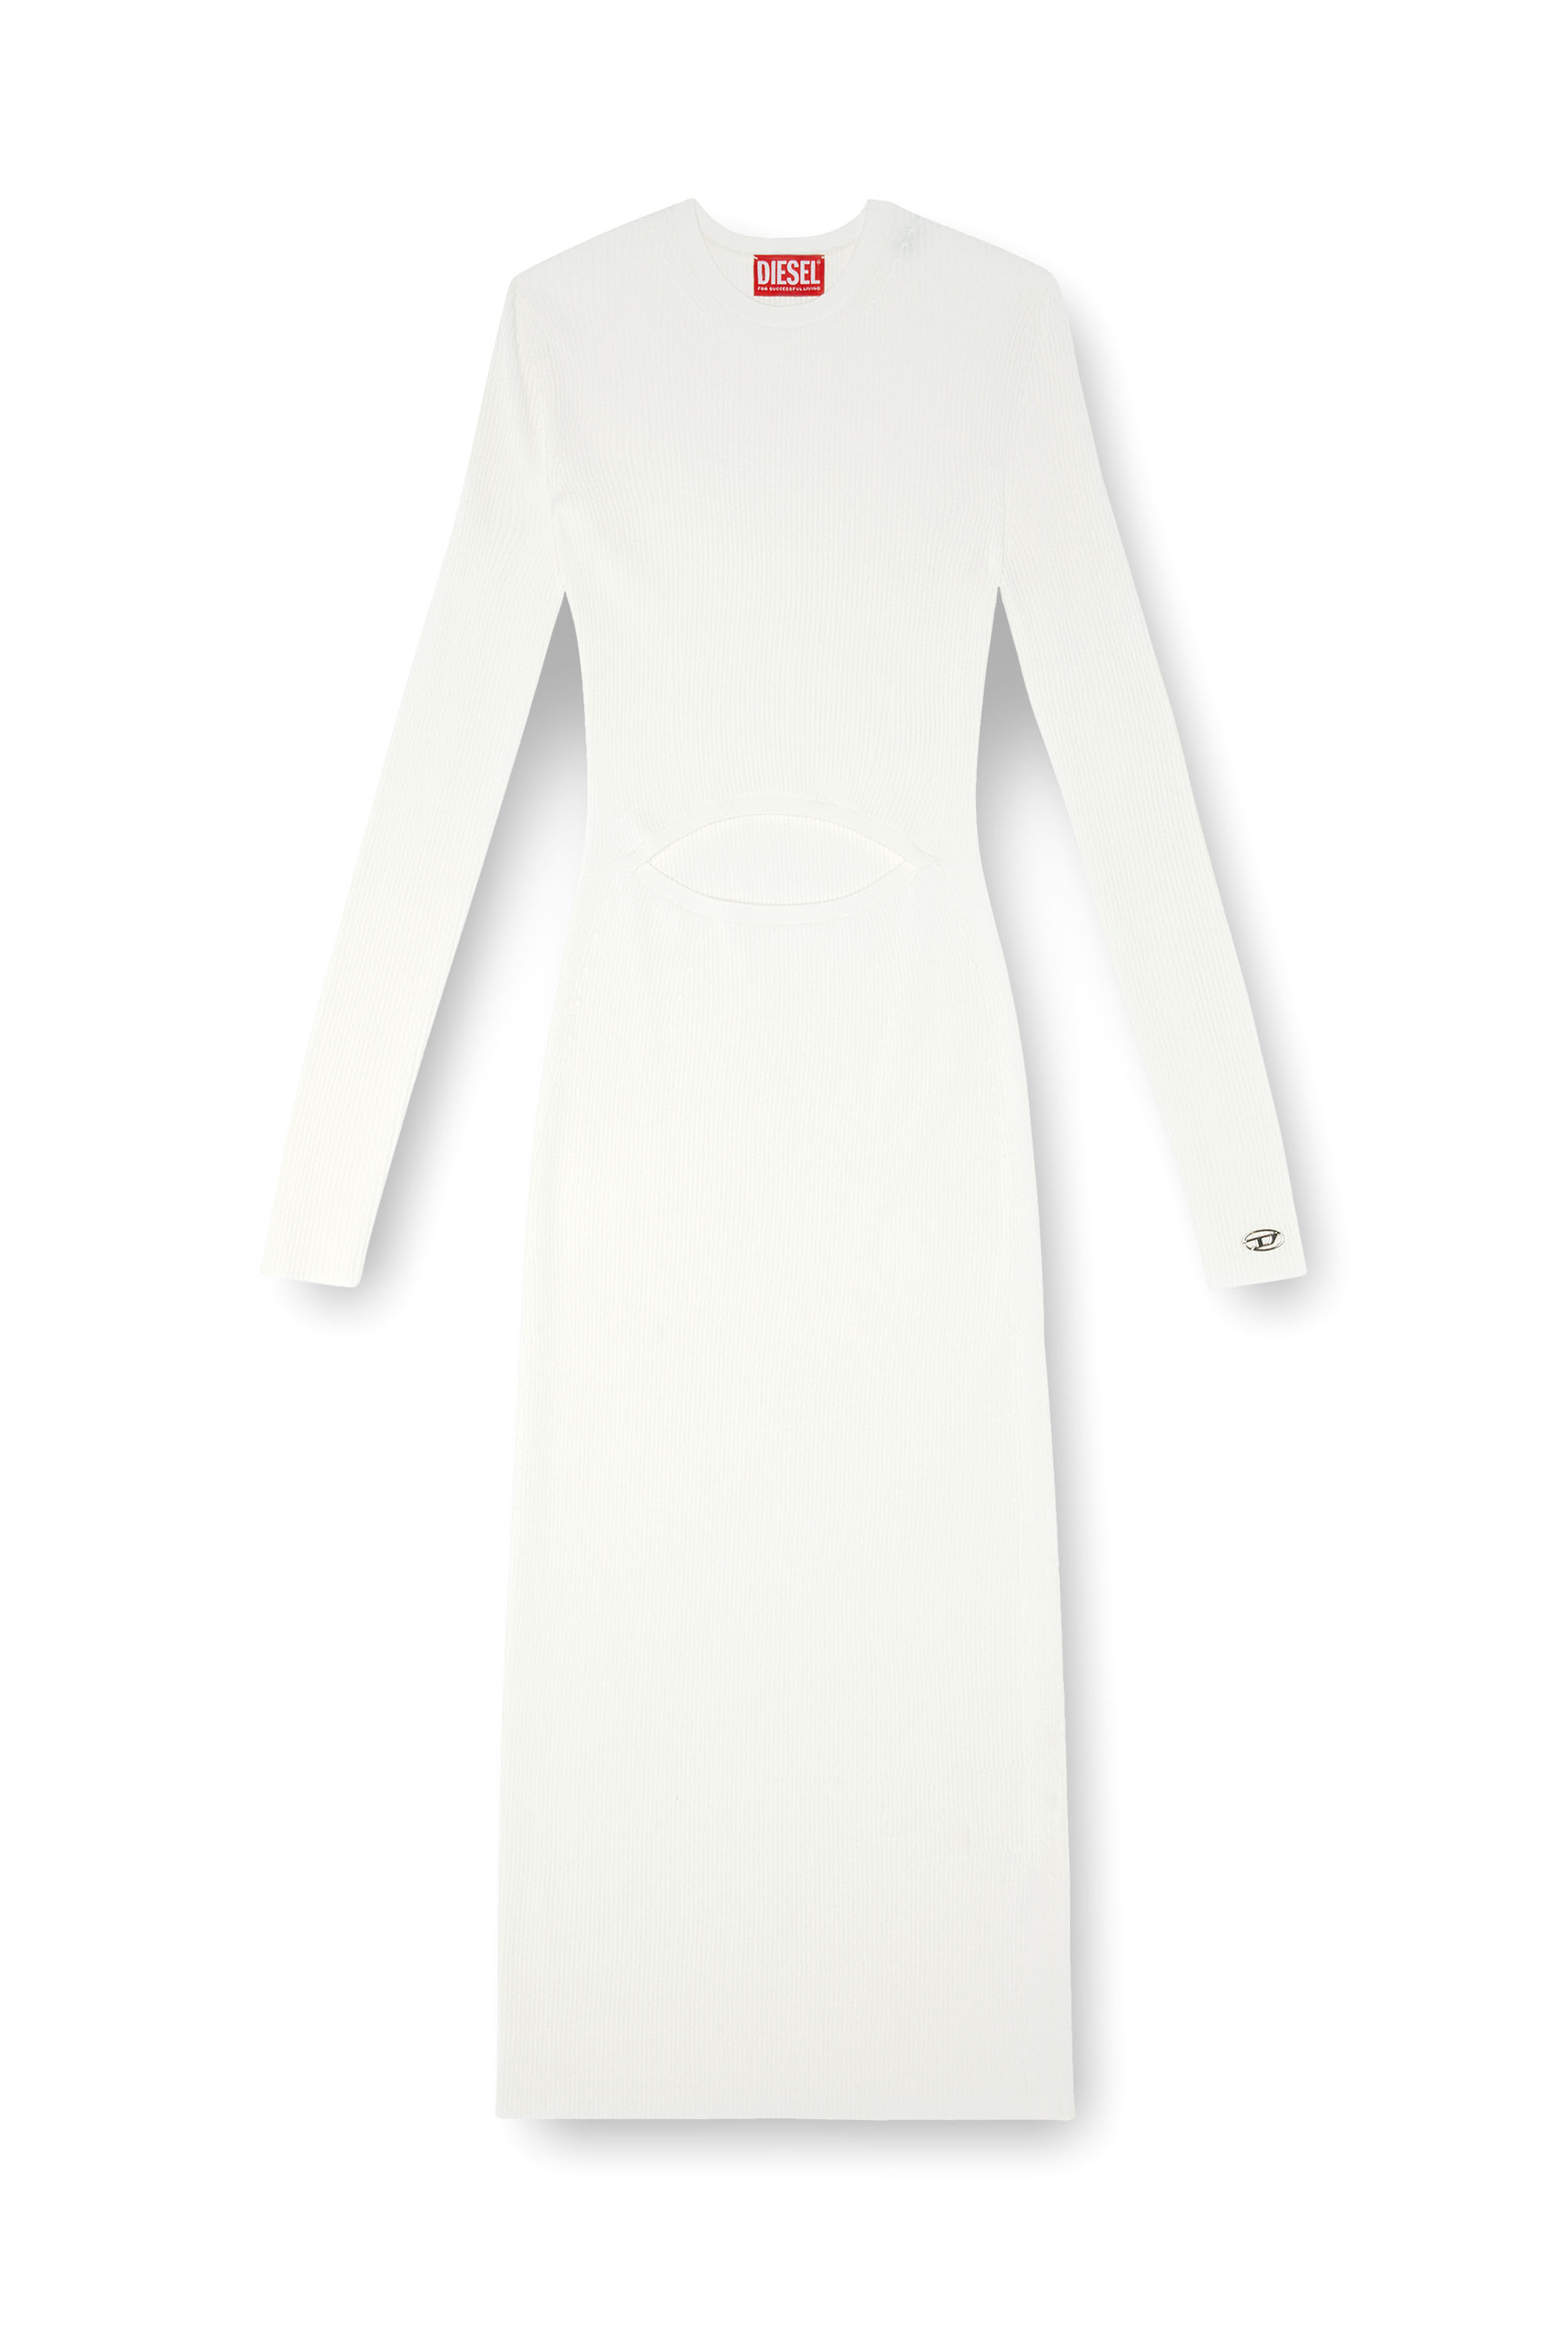 Diesel - M-PELAGOS, Damen Kleid aus Wollmischgewebe mit Cutout in Weiss - Image 1